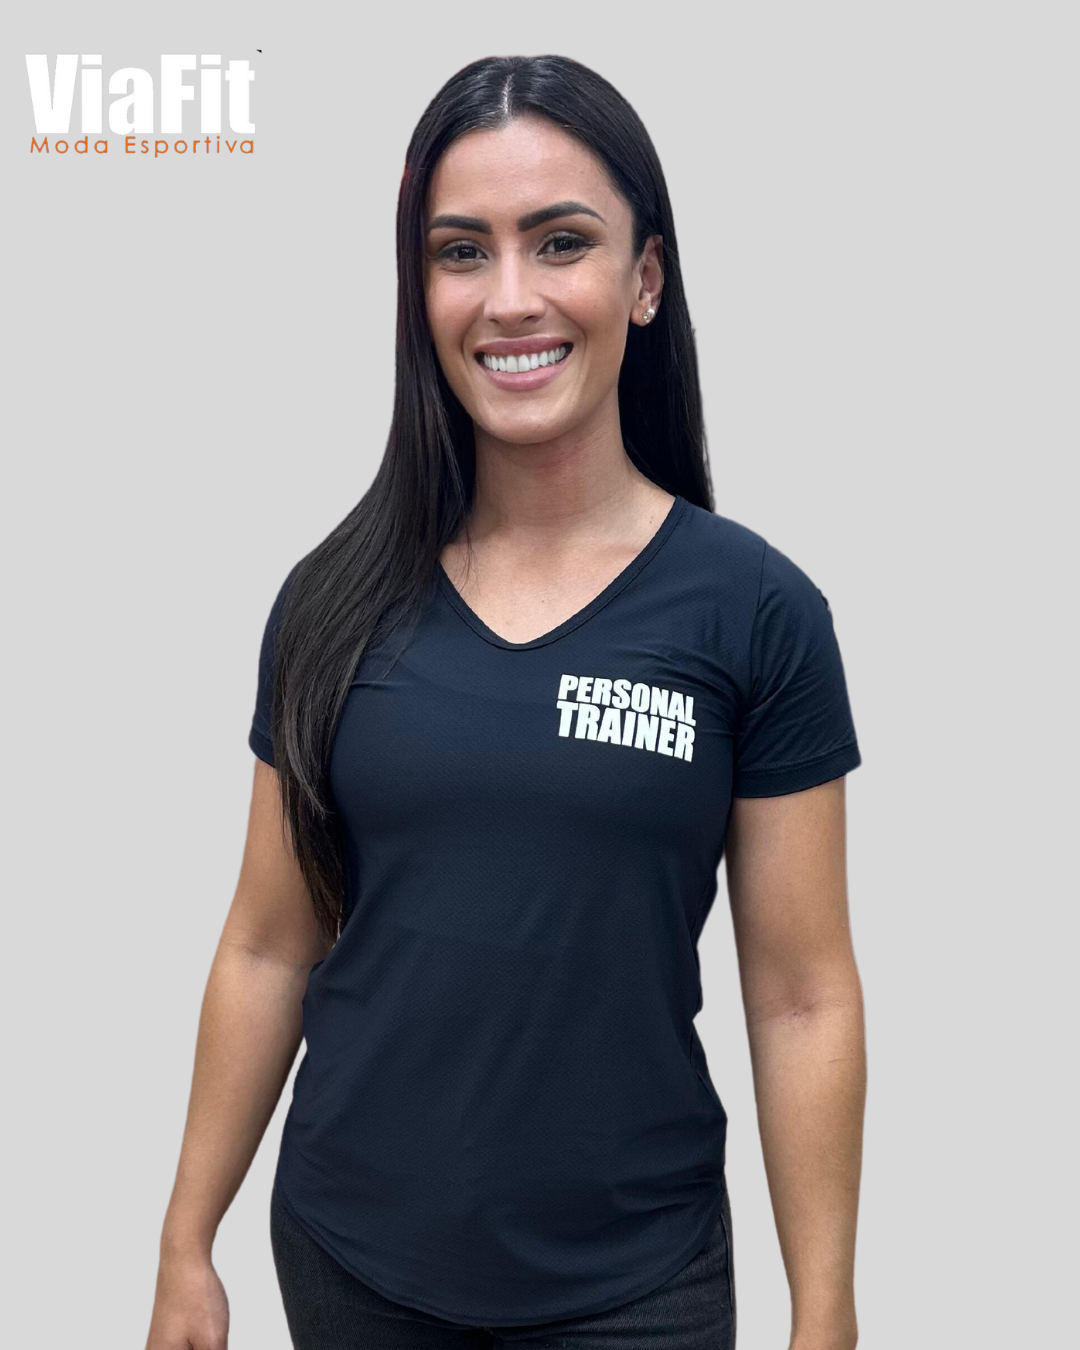 Camiseta Personal Trainer Feminina - ViaFit